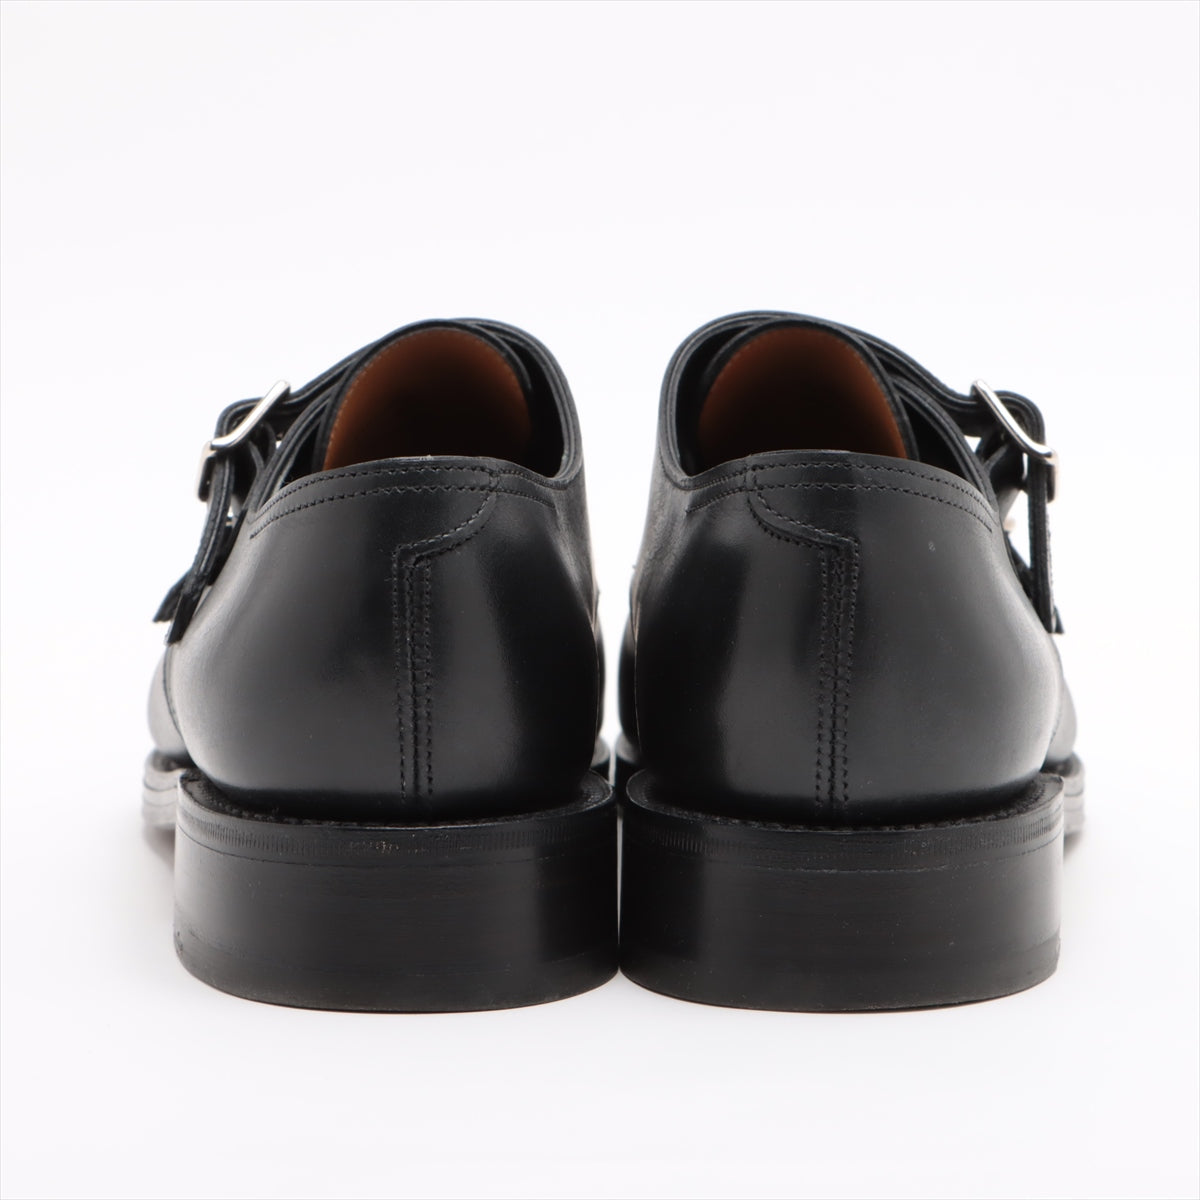 ジョンブル JOHNBULL シューズ WILLIAM ウィリアム ダブルモンクシューズ ビジネスシューズ レザーシューズ 革靴 メンズ 6 1/2(25cm相当) ブラック